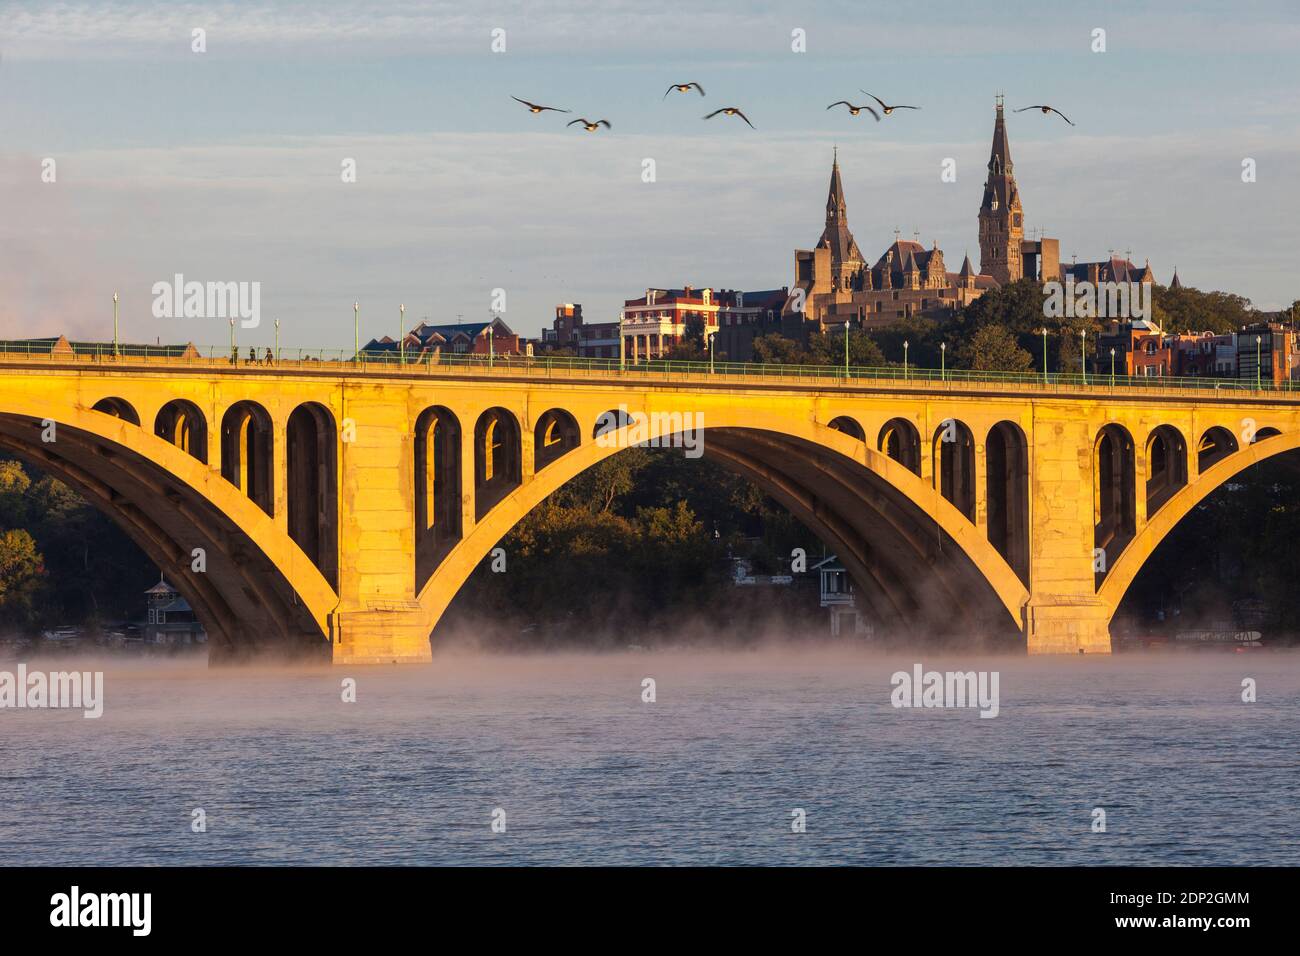 Kanadagänse Fliegen Sie am frühen Morgen über die Key Bridge über den Potomac River und schauen Sie in Richtung Georgetown University, Washington DC, USA. Stockfoto